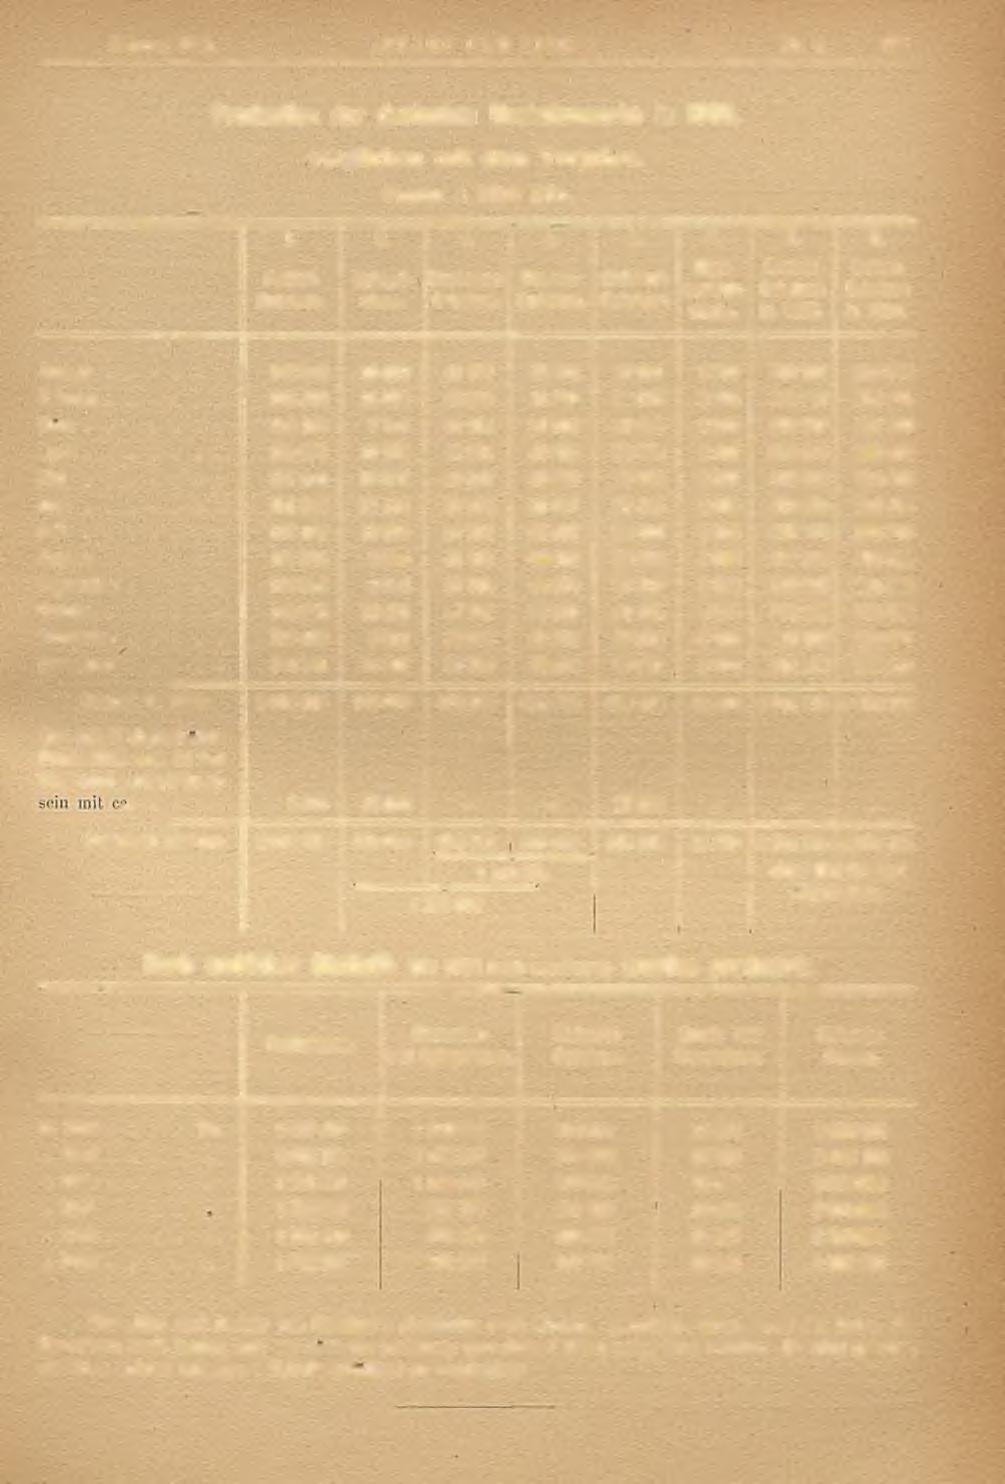 Februar 1886. STAHL UND EISEN." Nr. 2, 12!) Production der deutschen Hochofenwerke in 1885, verglichen m it dem Vorjahre. Tonnen ii 1000 Kilo. 1. 2. 3. 4. 5. 6. 7. 8. Puddel- Roheiscn. Spiegelcison.